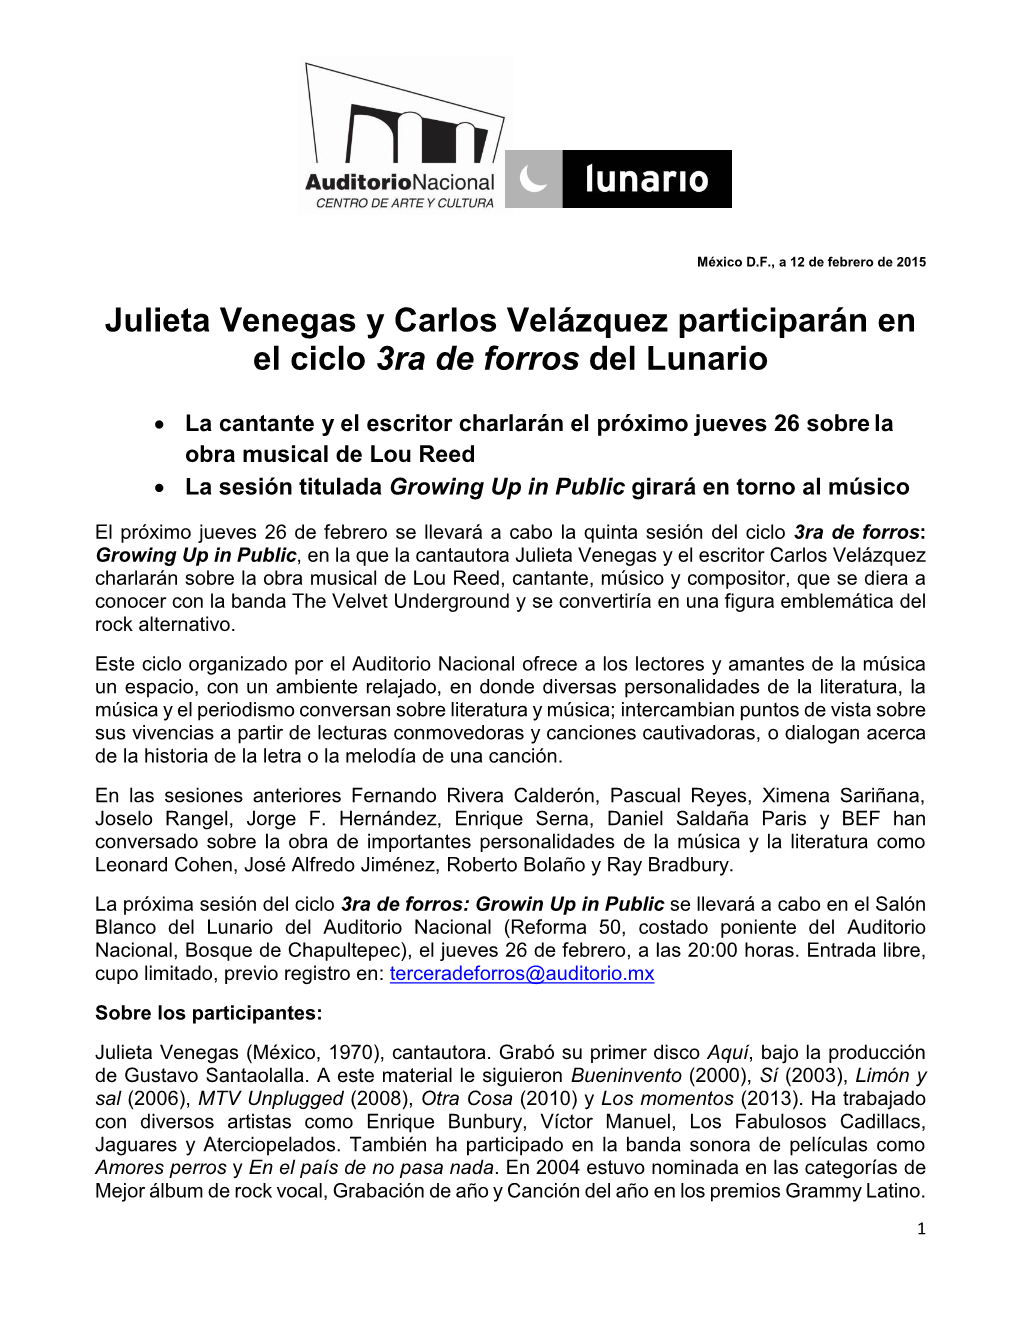 Julieta Venegas Y Carlos Velázquez Participarán En El Ciclo 3Ra De Forros Del Lunario